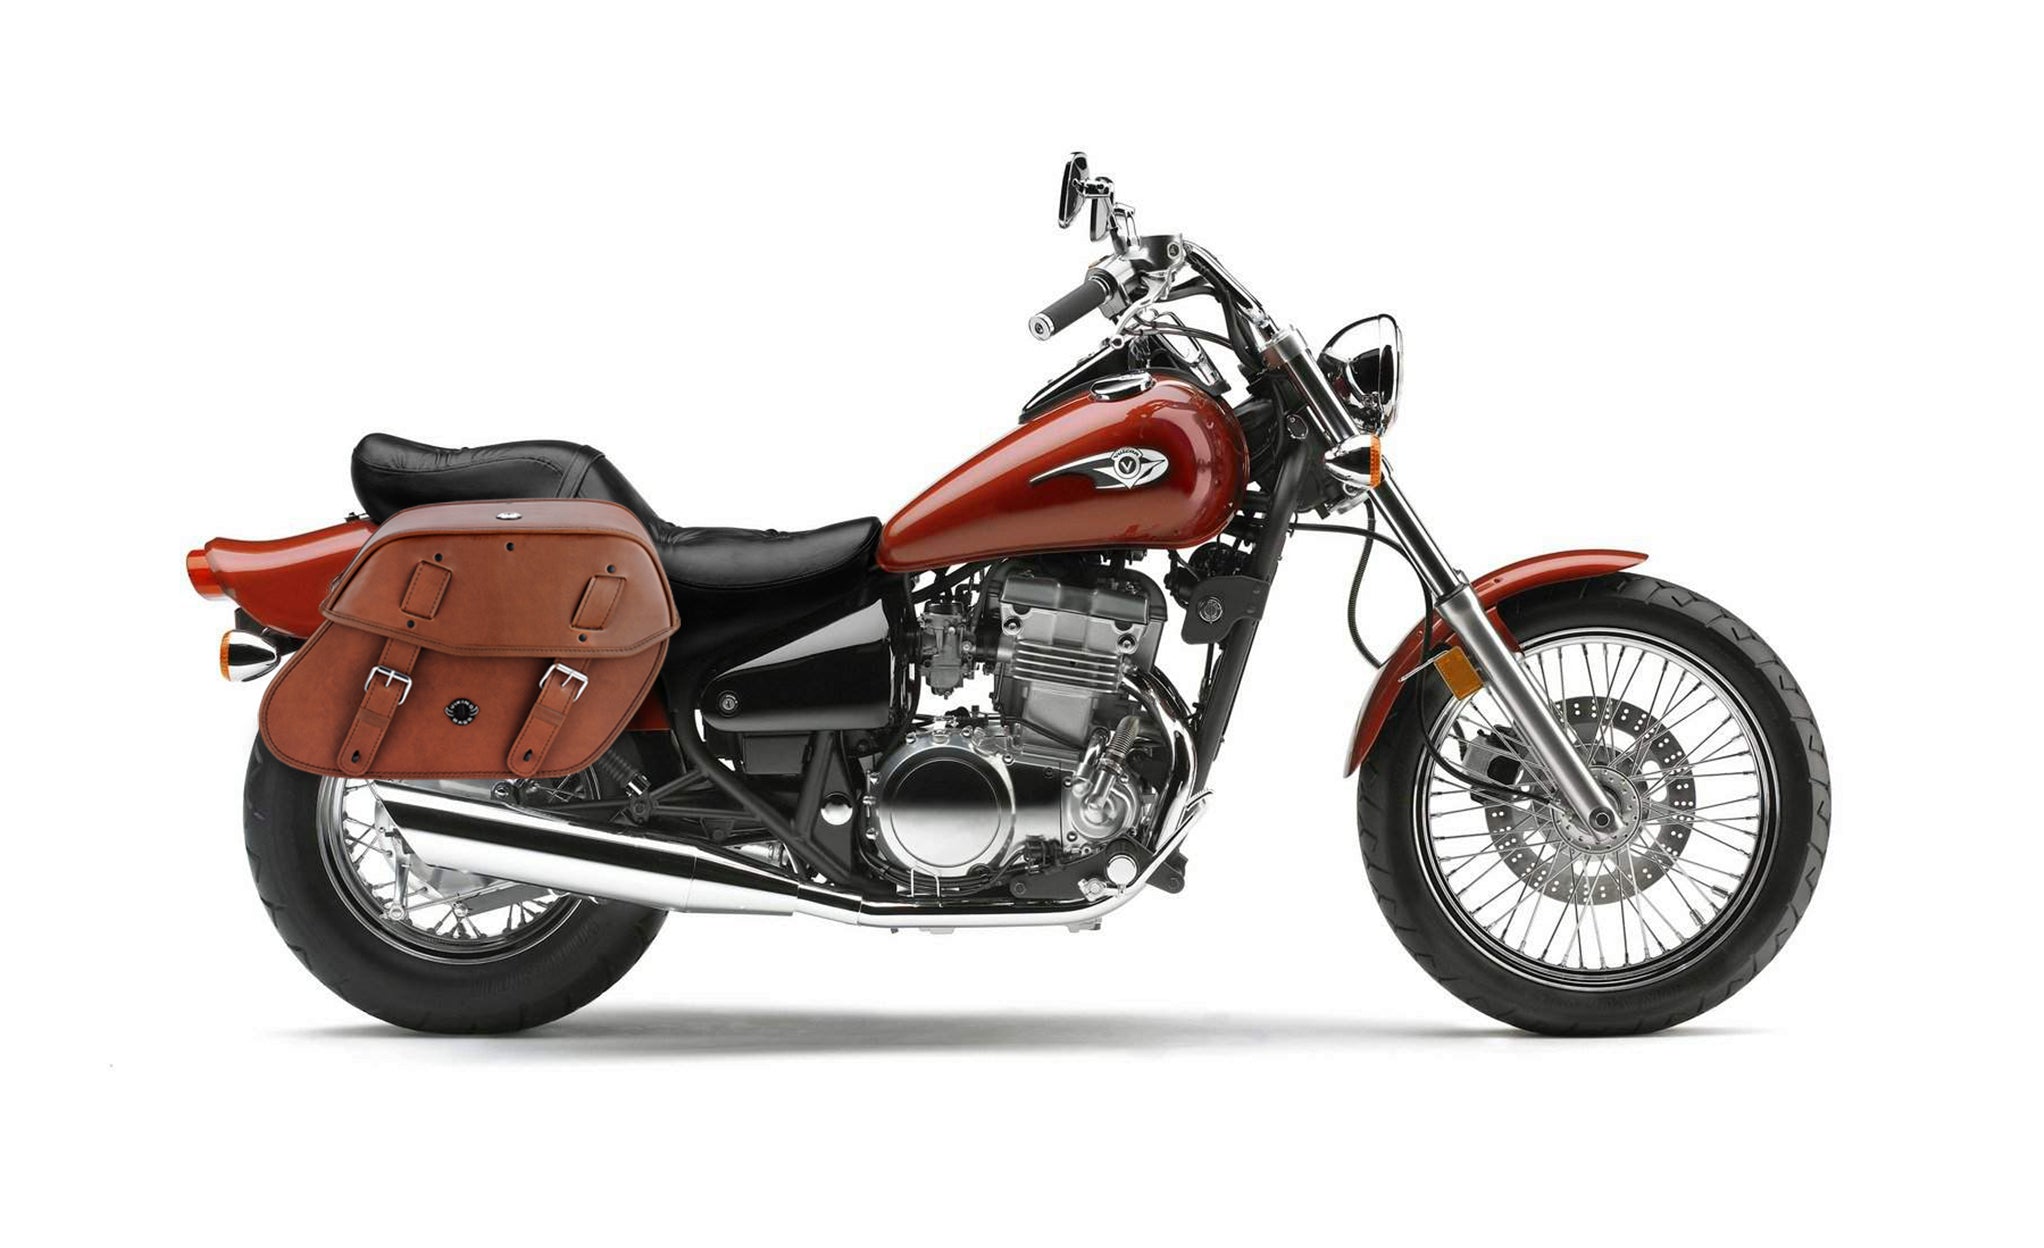 Viking Odin Brown Large Kawasaki Vulcan 500 En500 Leather Motorcycle Saddlebags on Bike Photo @expand